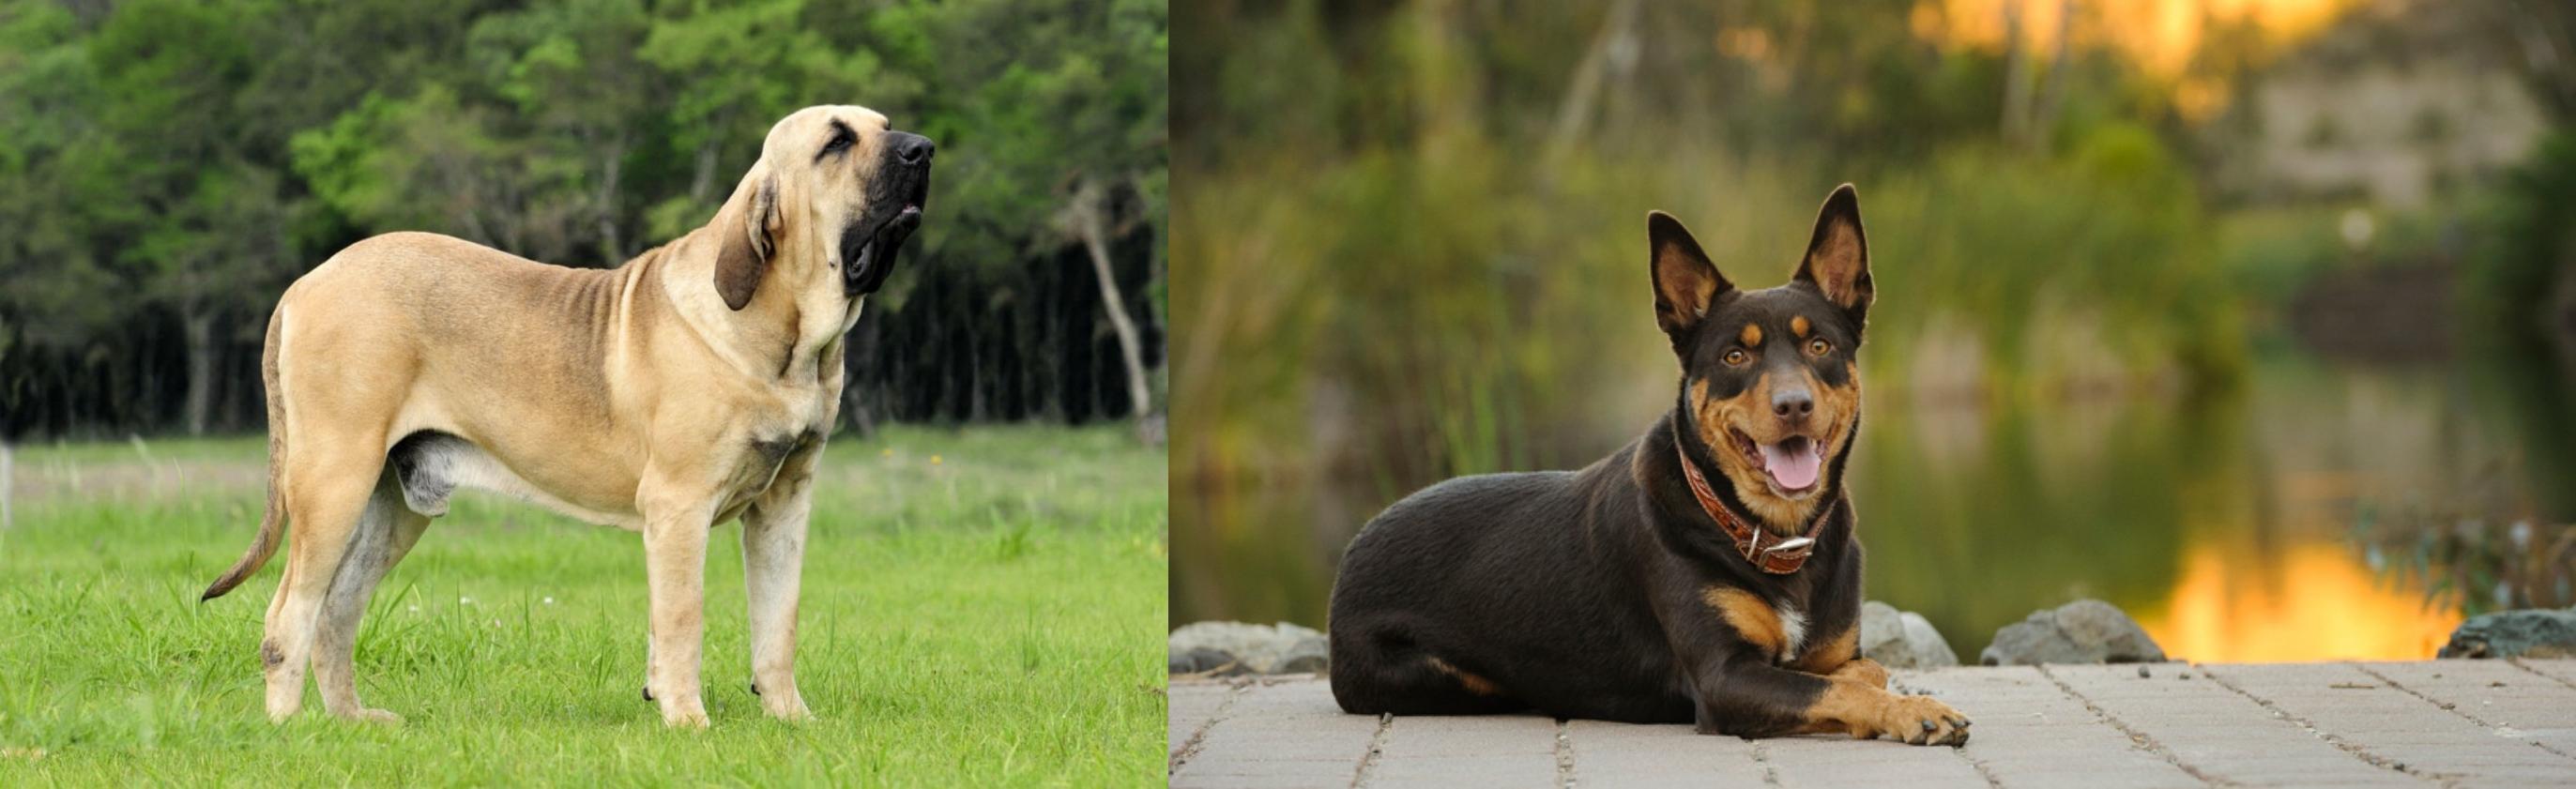 Fila Brasileiro Vs Australian Kelpie Breed Comparison